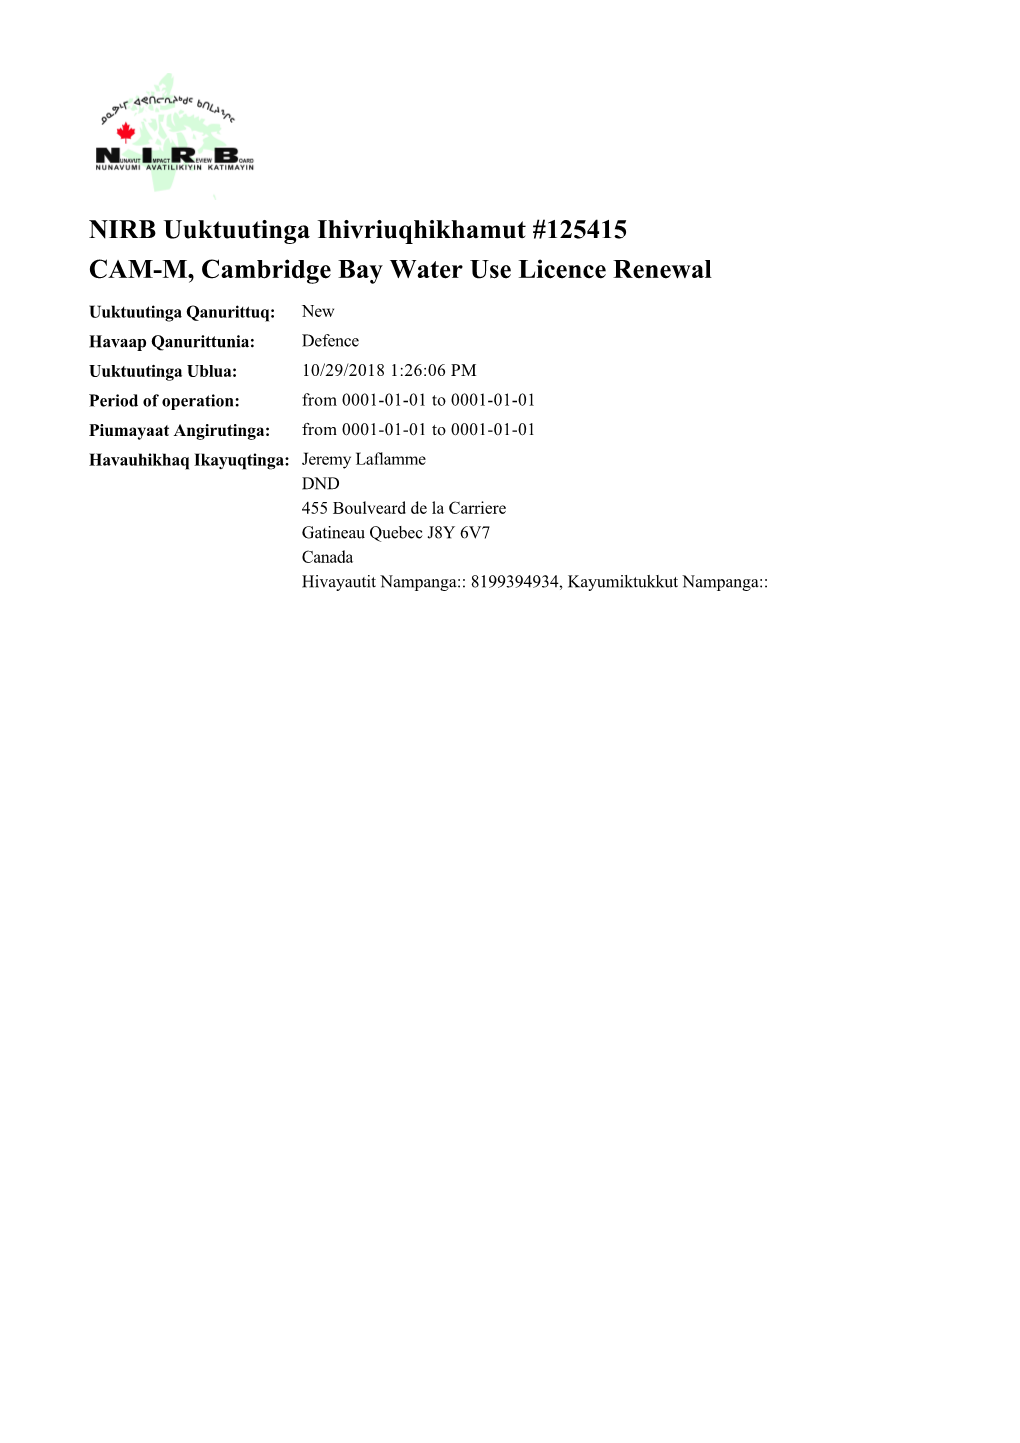 NIRB Uuktuutinga Ihivriuqhikhamut #125415 CAM-M, Cambridge Bay Water Use Licence Renewal